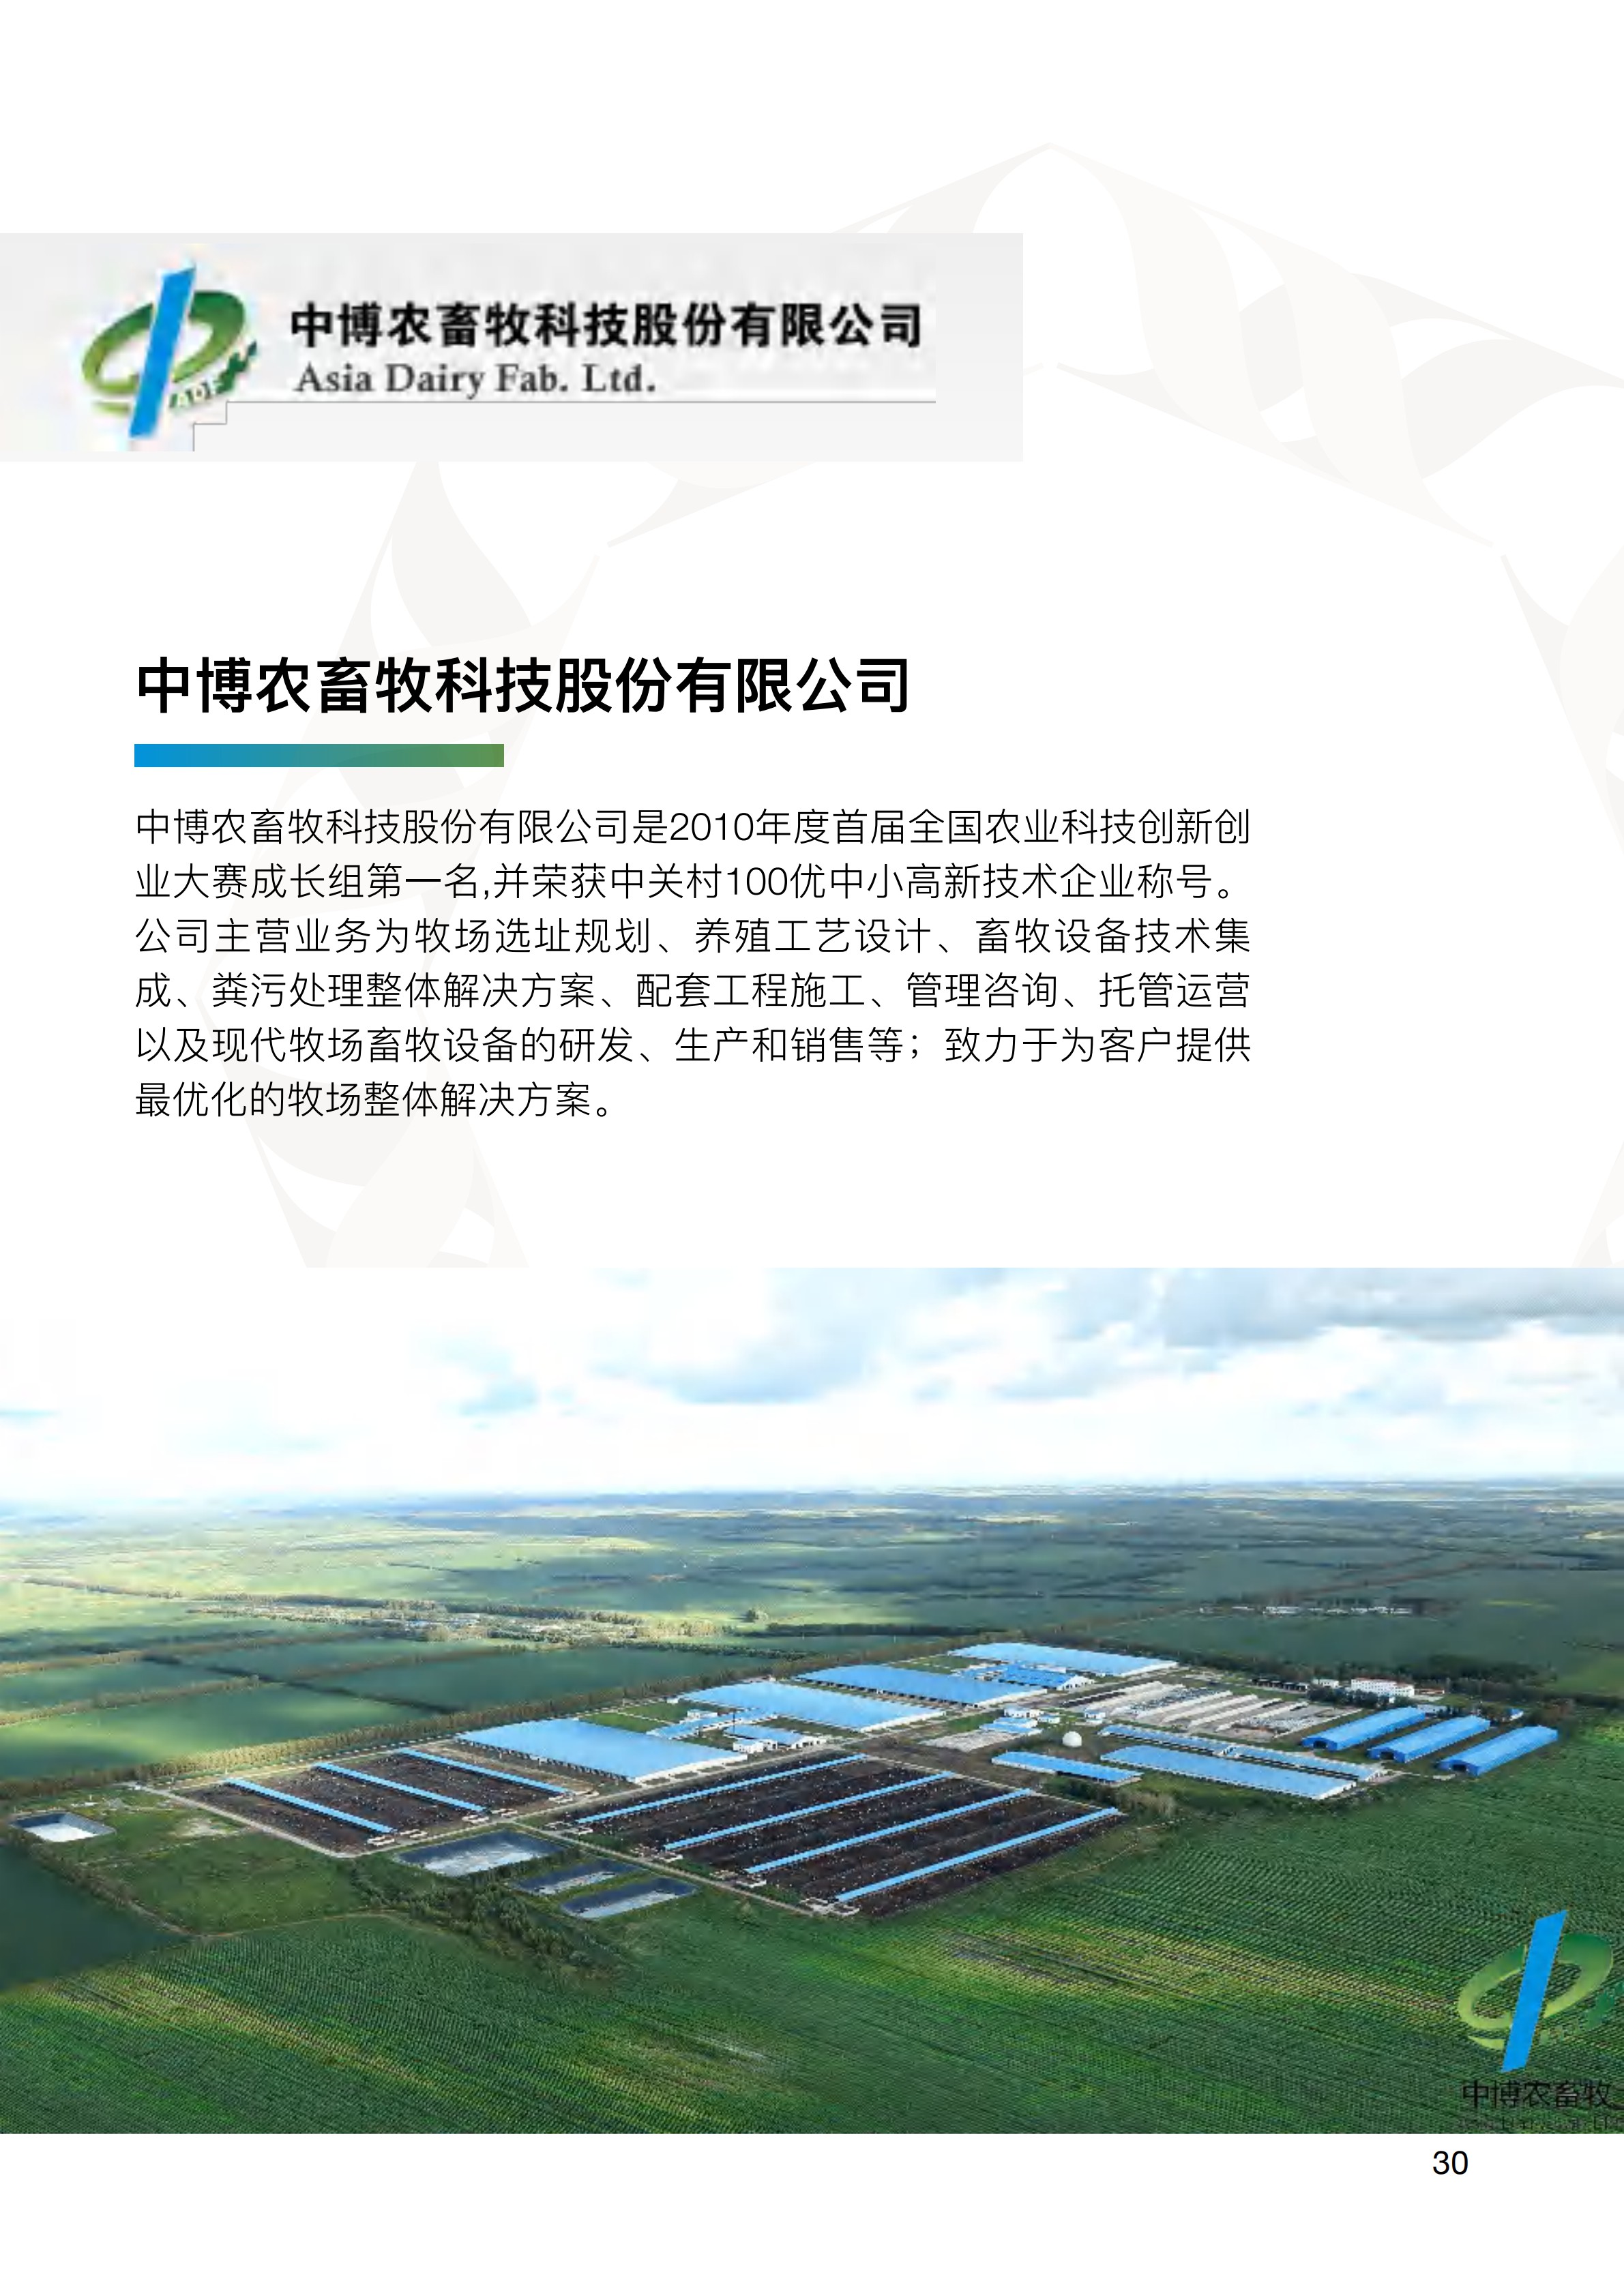 中关村出海产品手册(Chinese Simplified) 2020 Zhongguancun Product Handbook v1.0_33.jpg